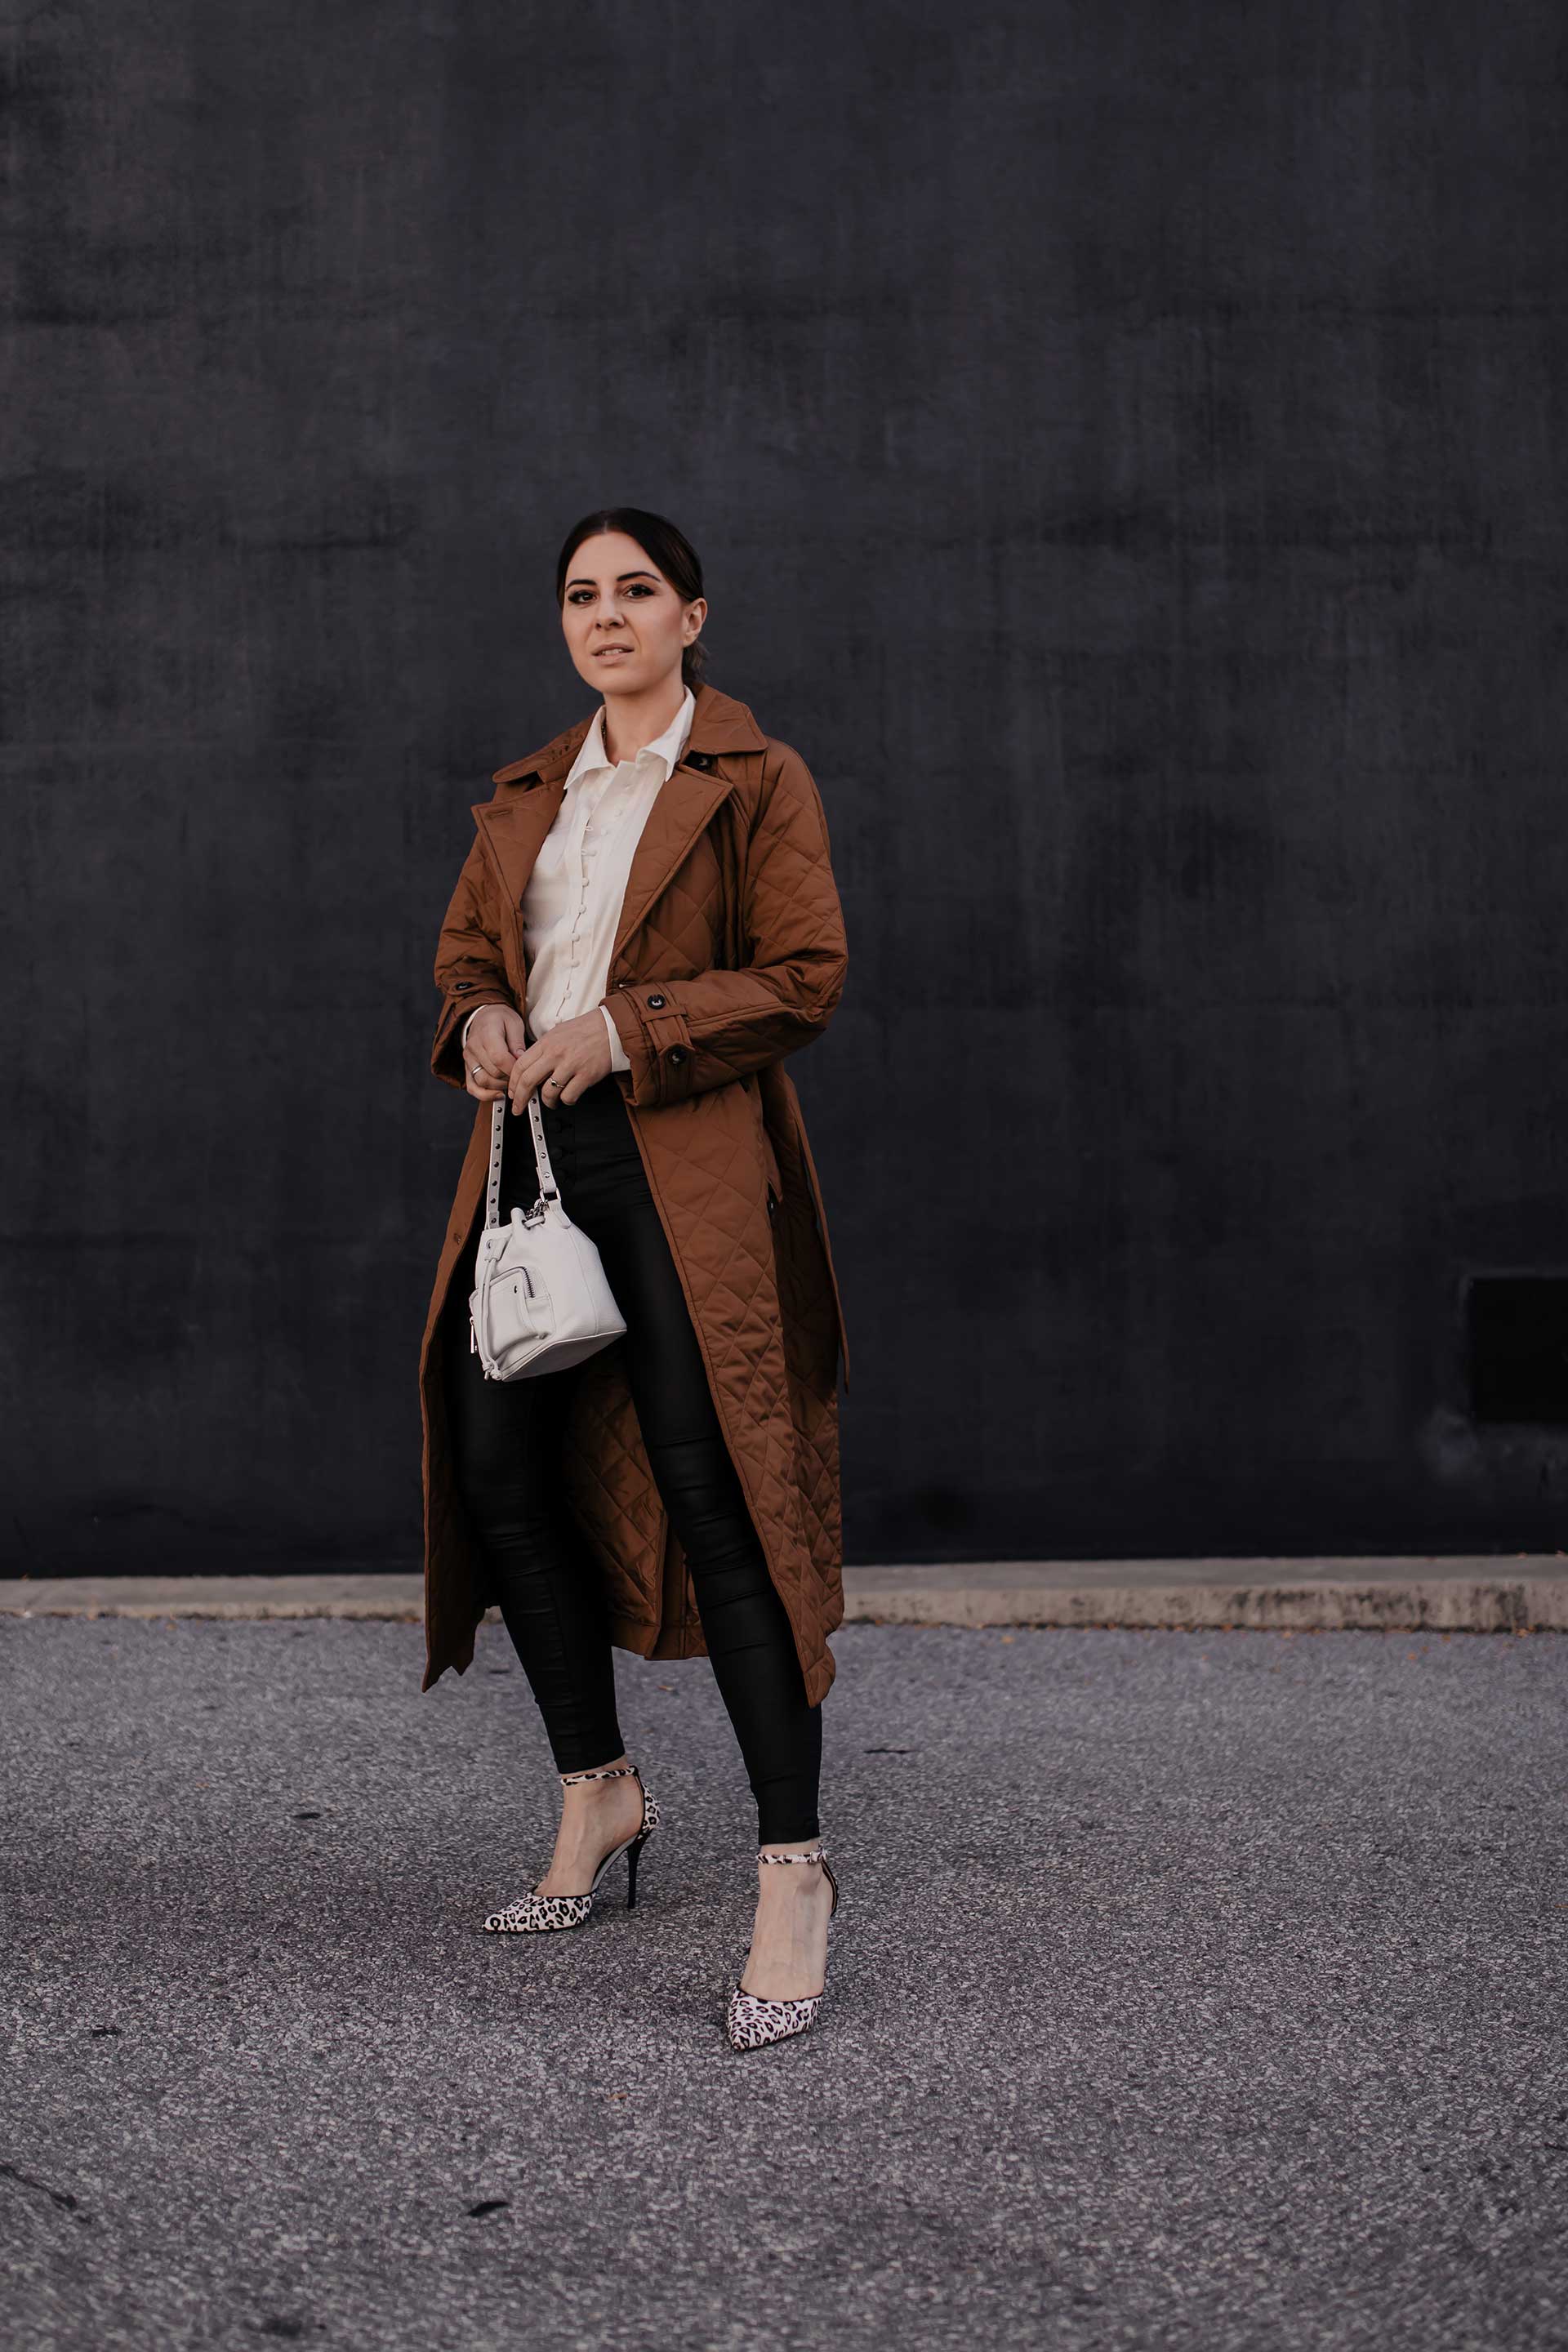 Du möchtest deine Lederhose im Büro kombinieren? Am Modeblog habe ich 5 Tipps, die du beachten solltest, wenn du die Lederhose im Business-Casual Outfit tragen möchtest. www.whoismocca.com #bürooutfit #business #modetrends #lederhose